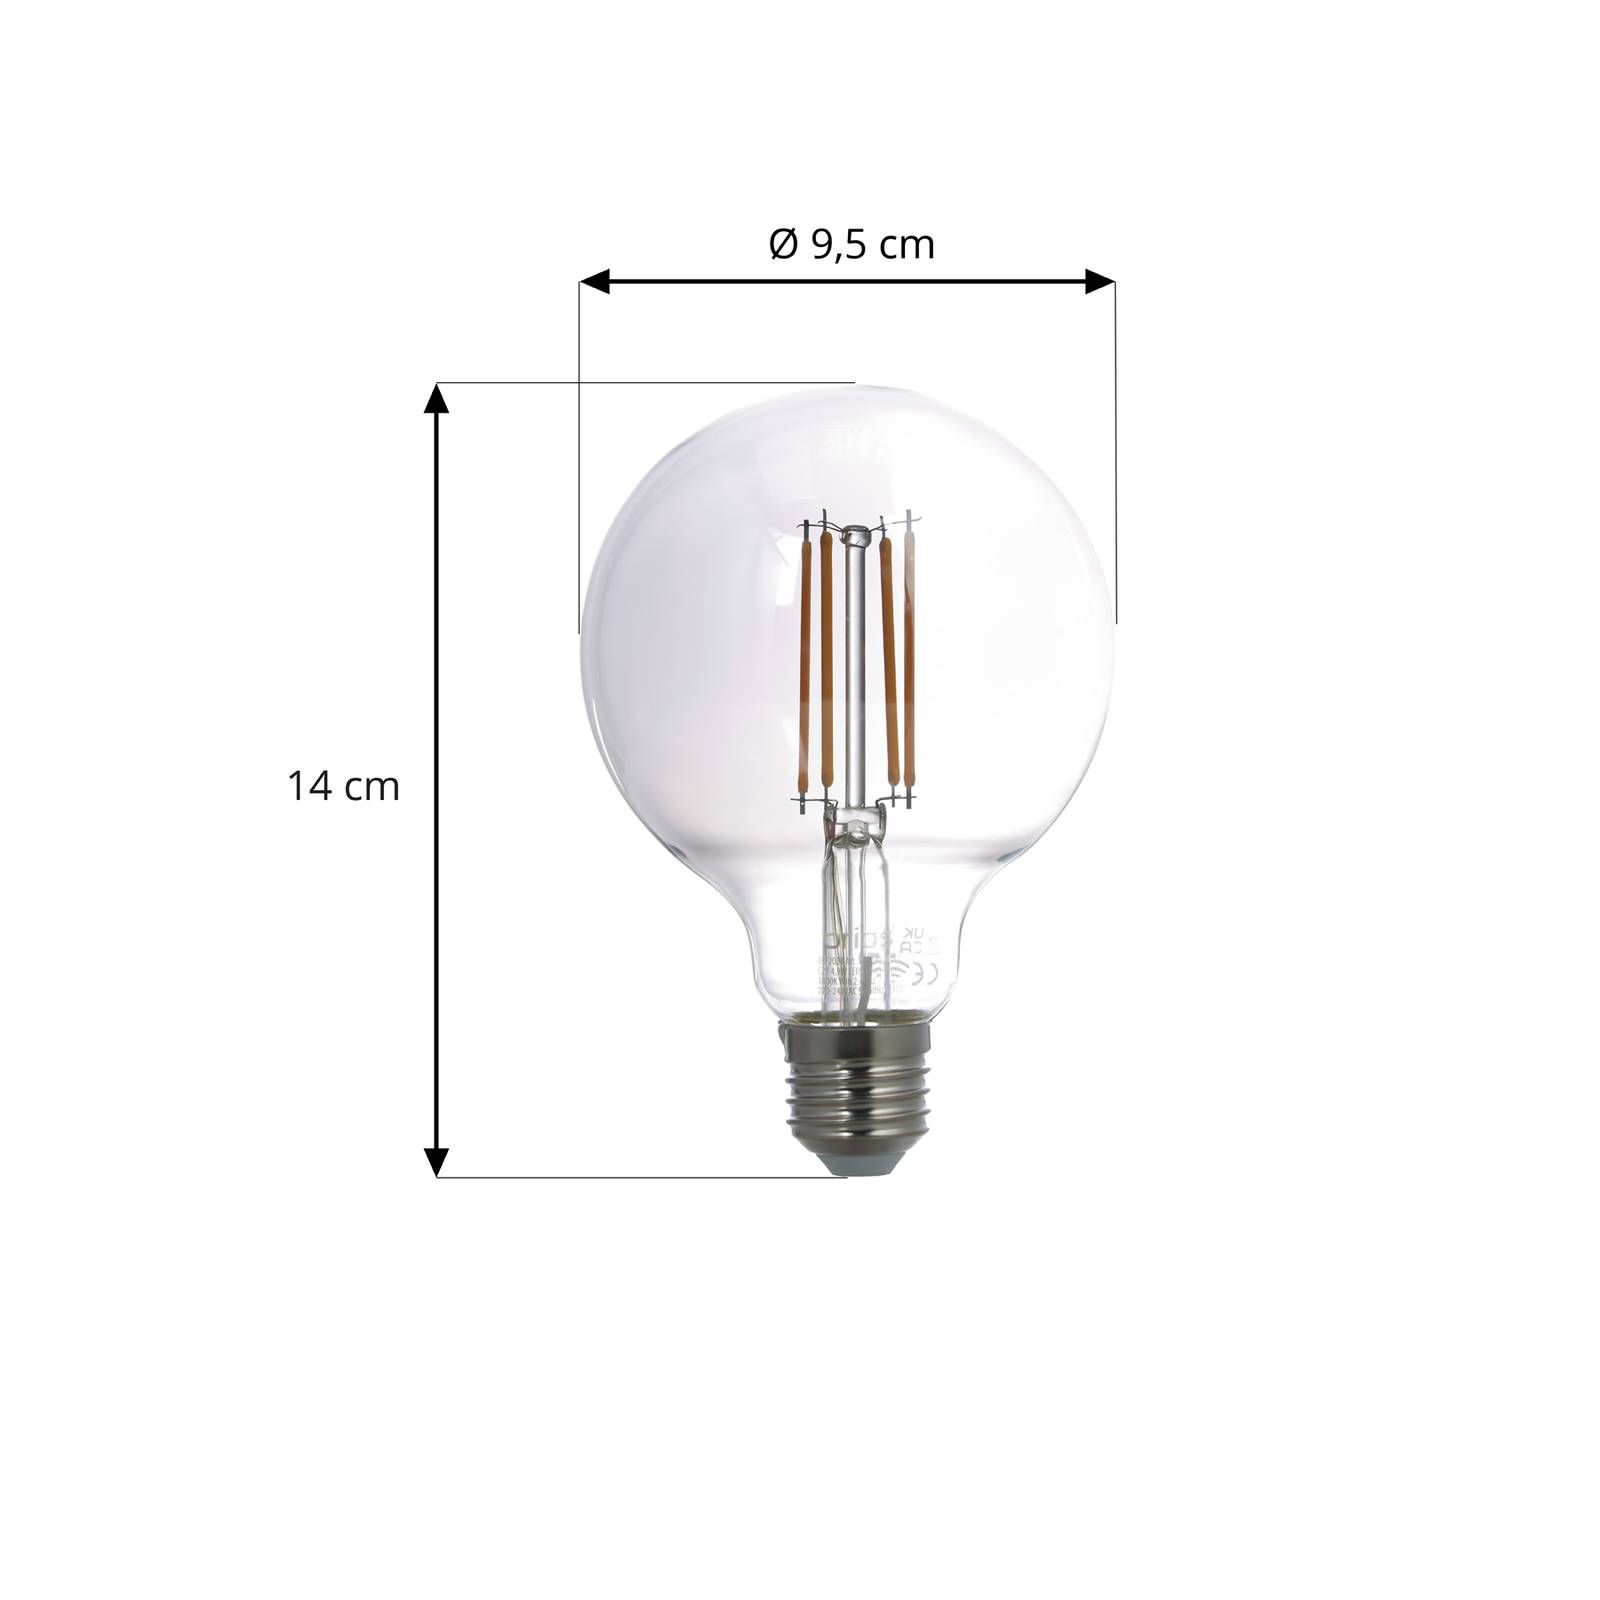 PRIOS Smart LED E27 globe dymová sivá 4, 9W WLAN, sklo, E27, 4.9W, P: 14 cm